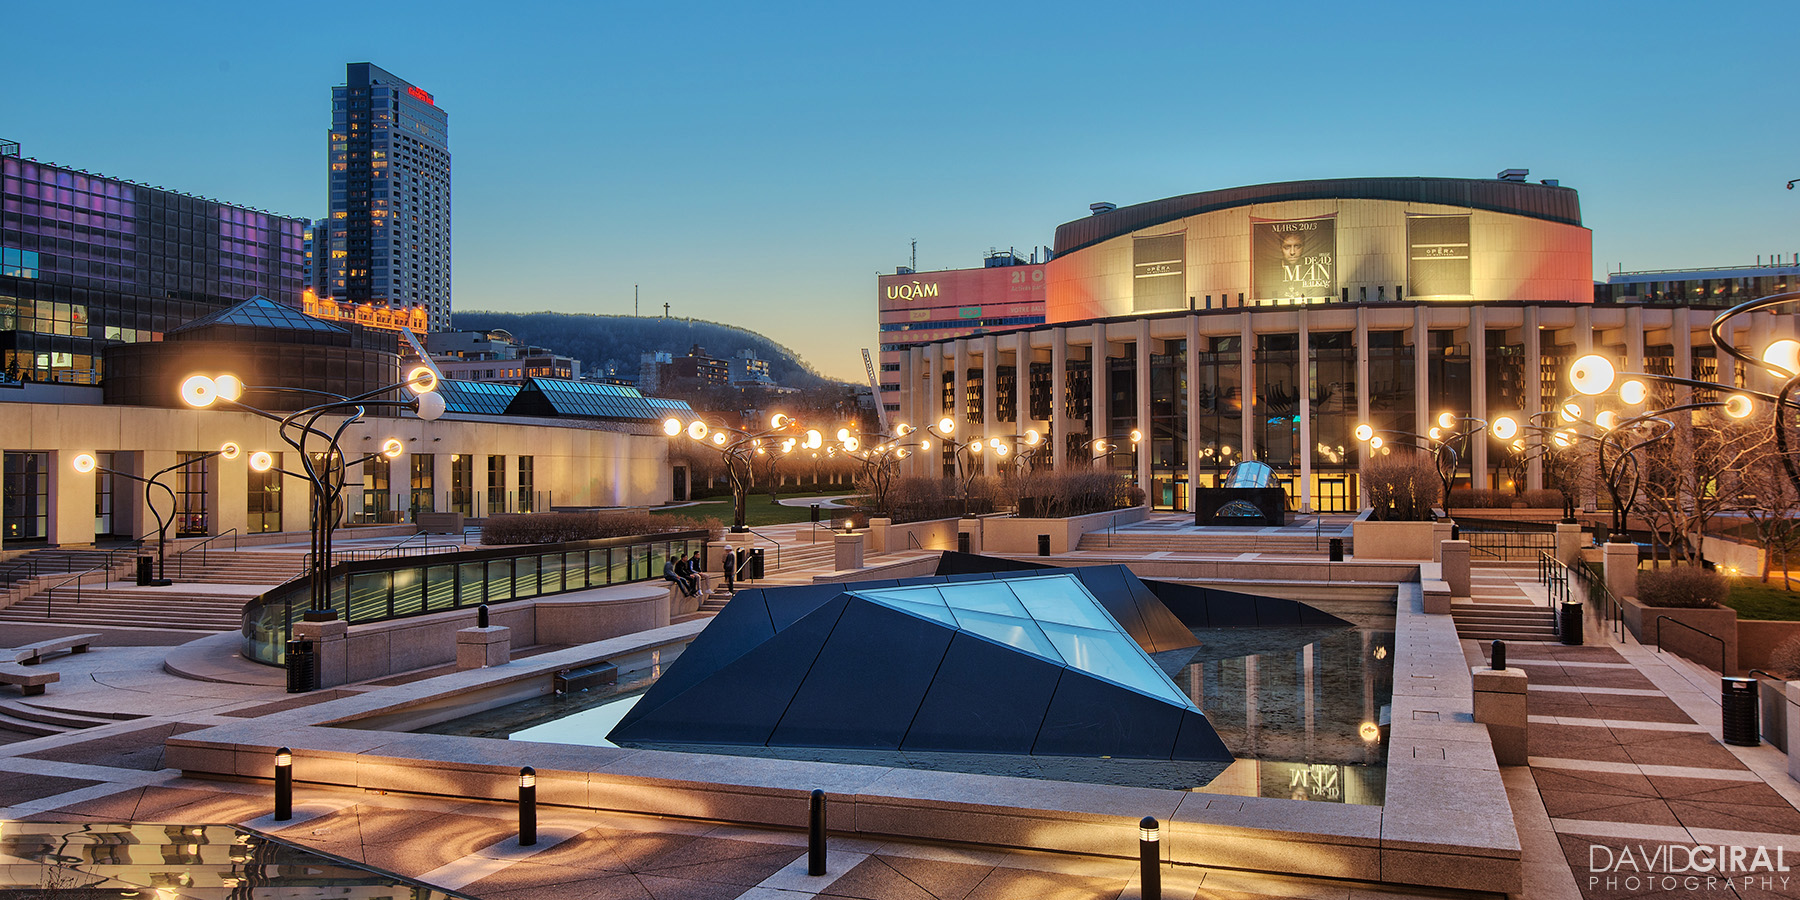 Place des Arts, complexo que inclui o Museu de Arte Contemporânea e vários teatros que são palco para shows, balés recitais, óperas...